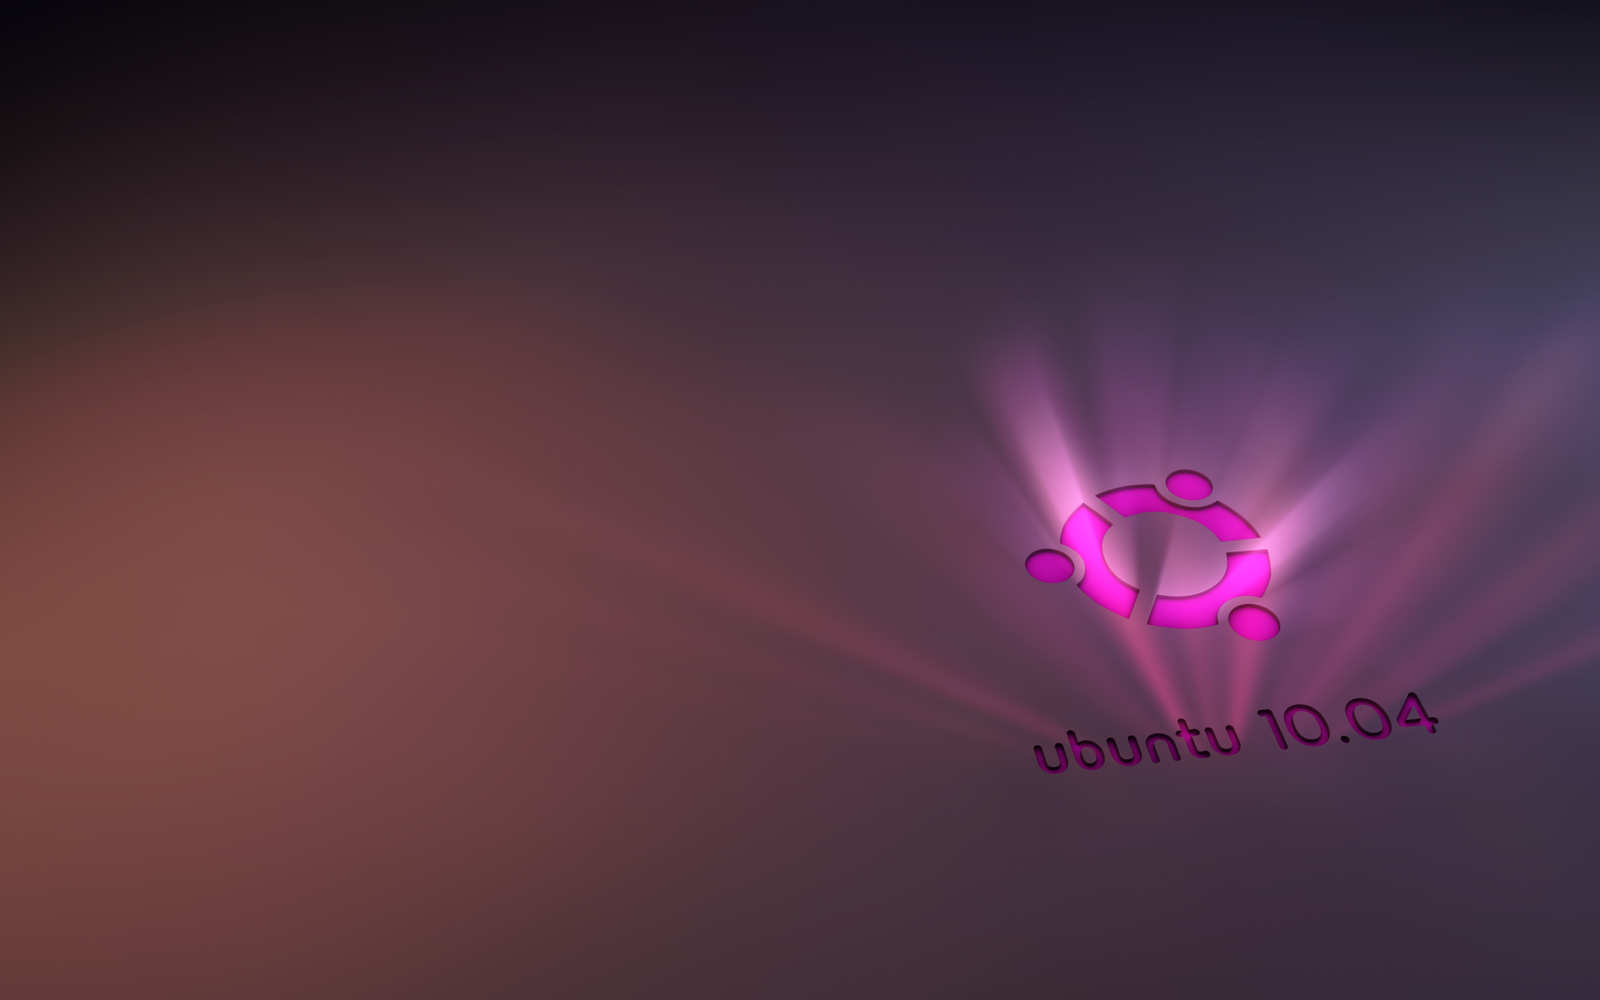 ubuntu gnome wallpaper,violett,rosa,lila,licht,rot